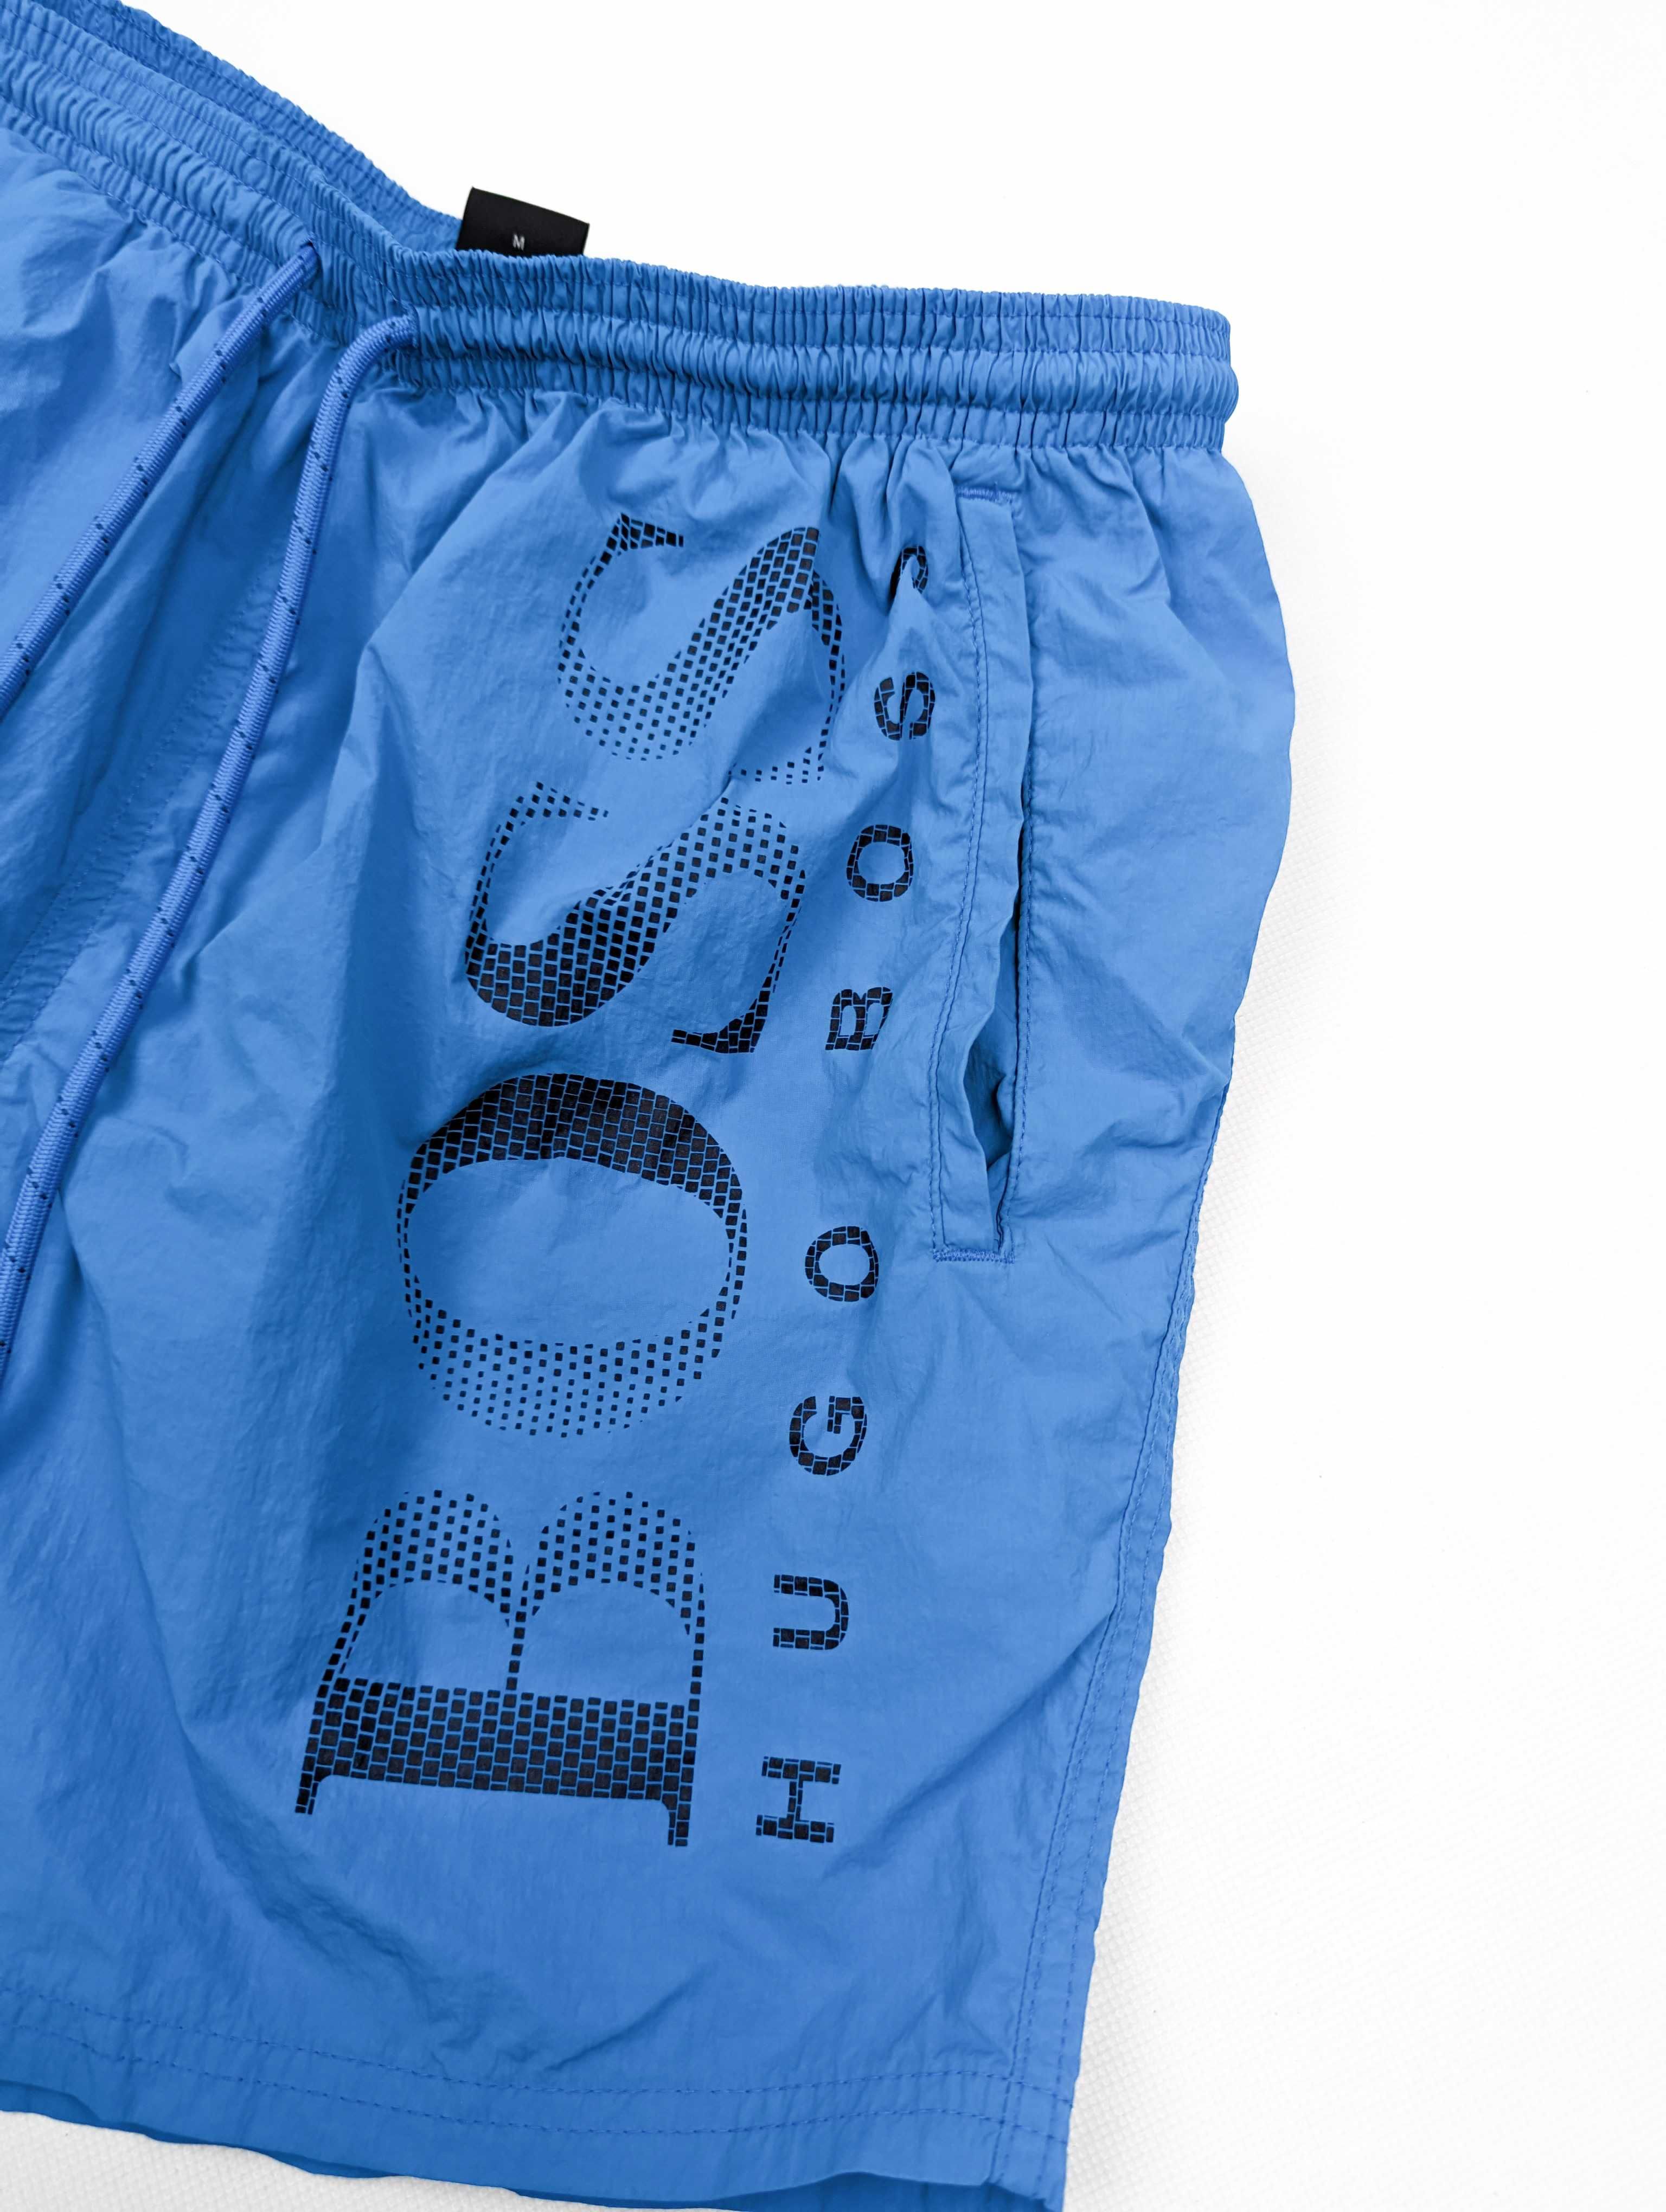 Hugo Boss niebieskie spodenki szorty M logo